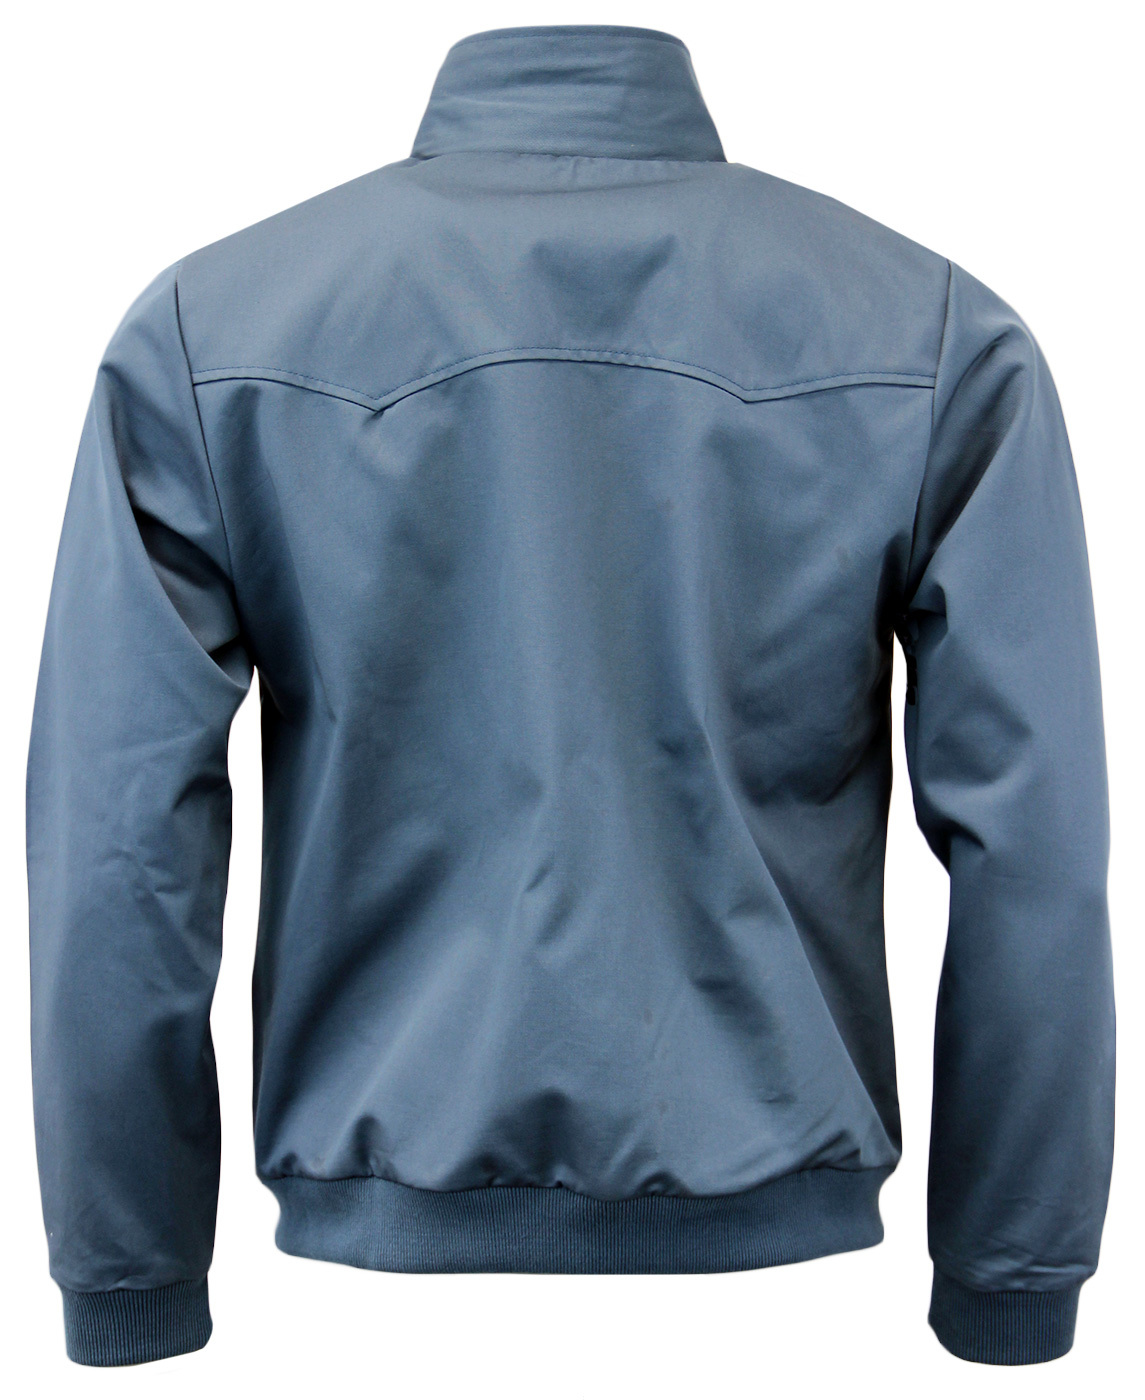 MERC Retro Mod Tartan Lined Indie Harrington Jacket In Steel Blue